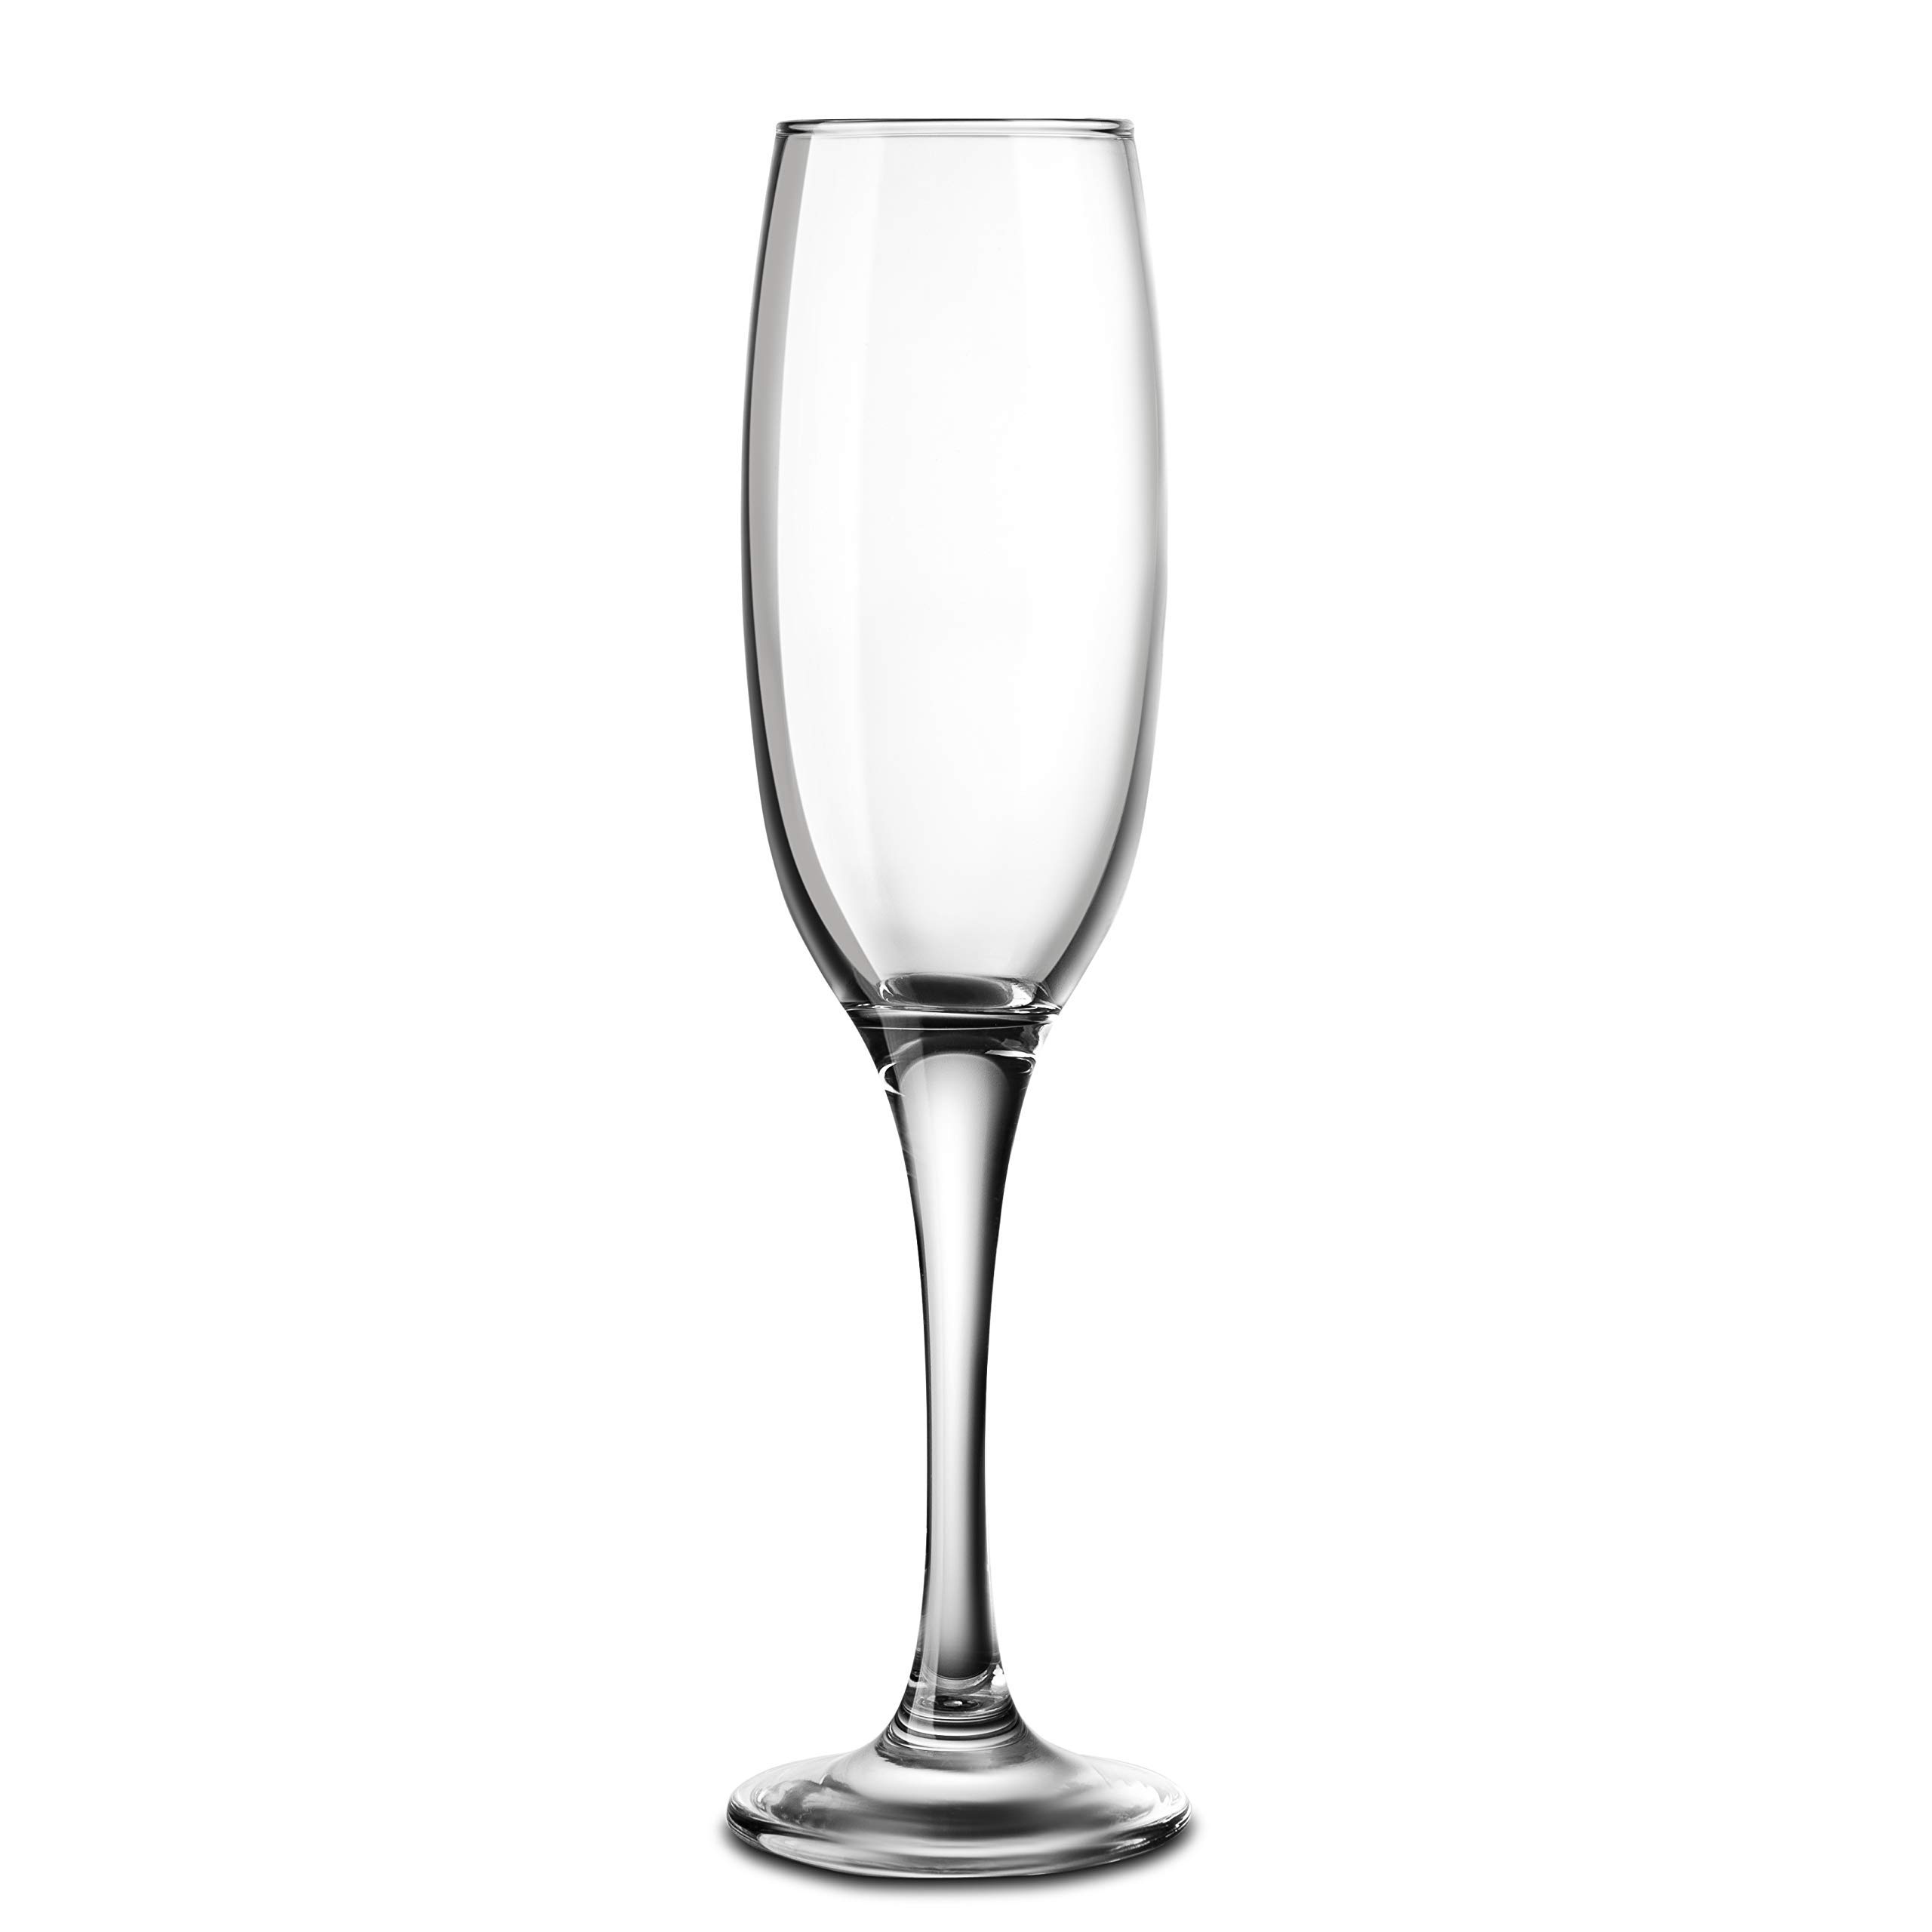 Champagne Glasses Thin Stem, KooK Premium Clear Glass Champagne Flutes Set of 8, 7 oz champagne, Classic Champagne Glasses